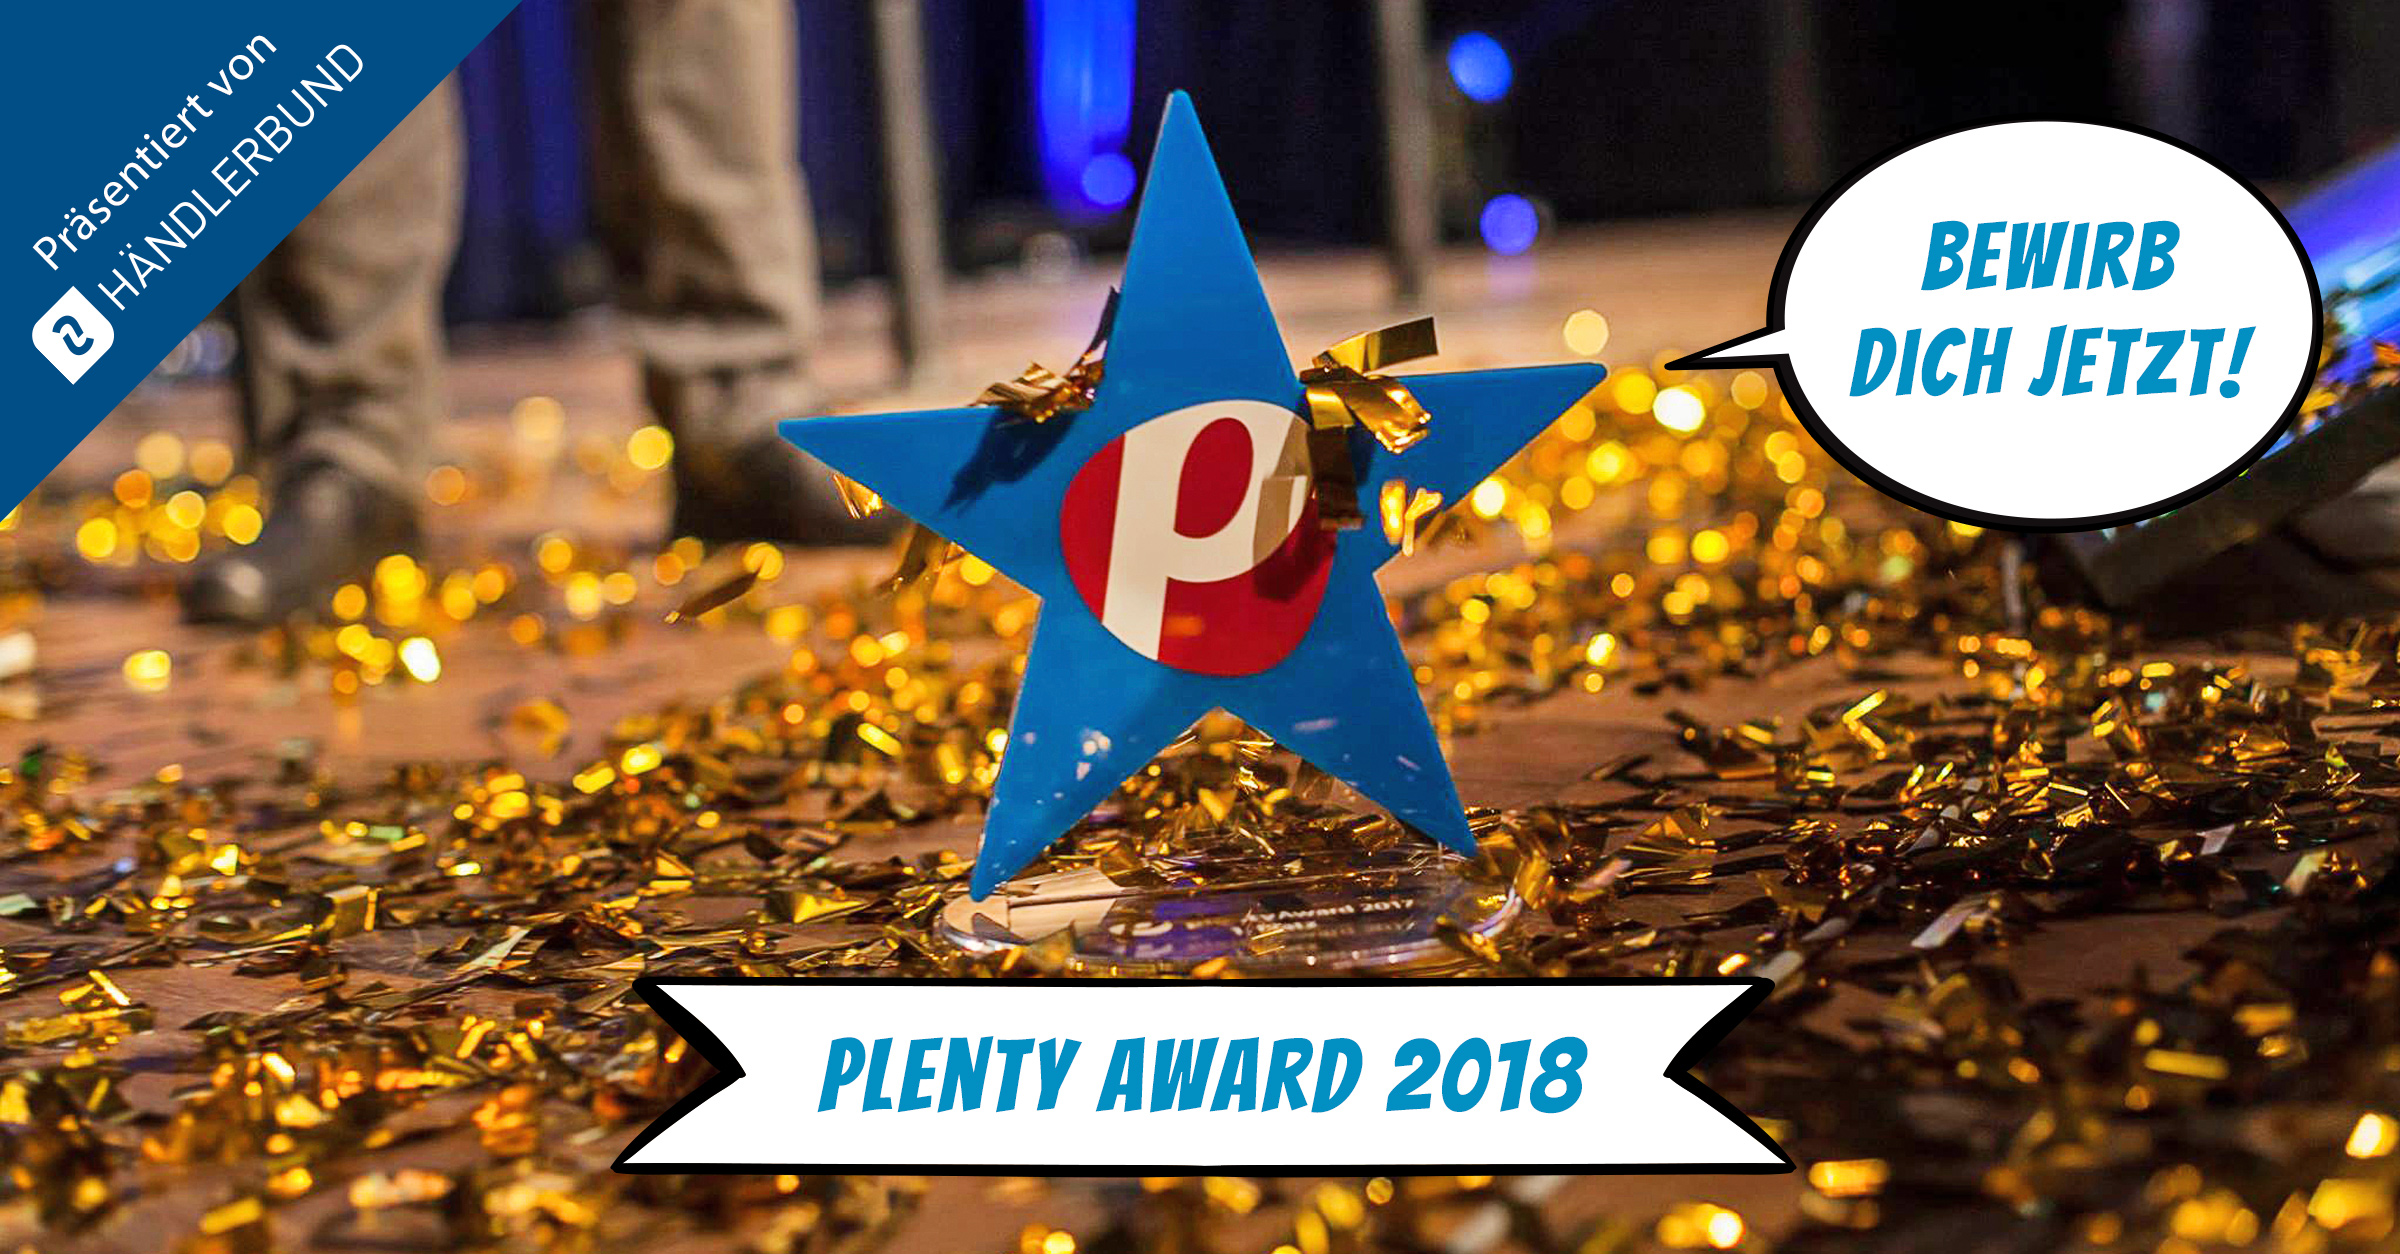 plenty Award 2018